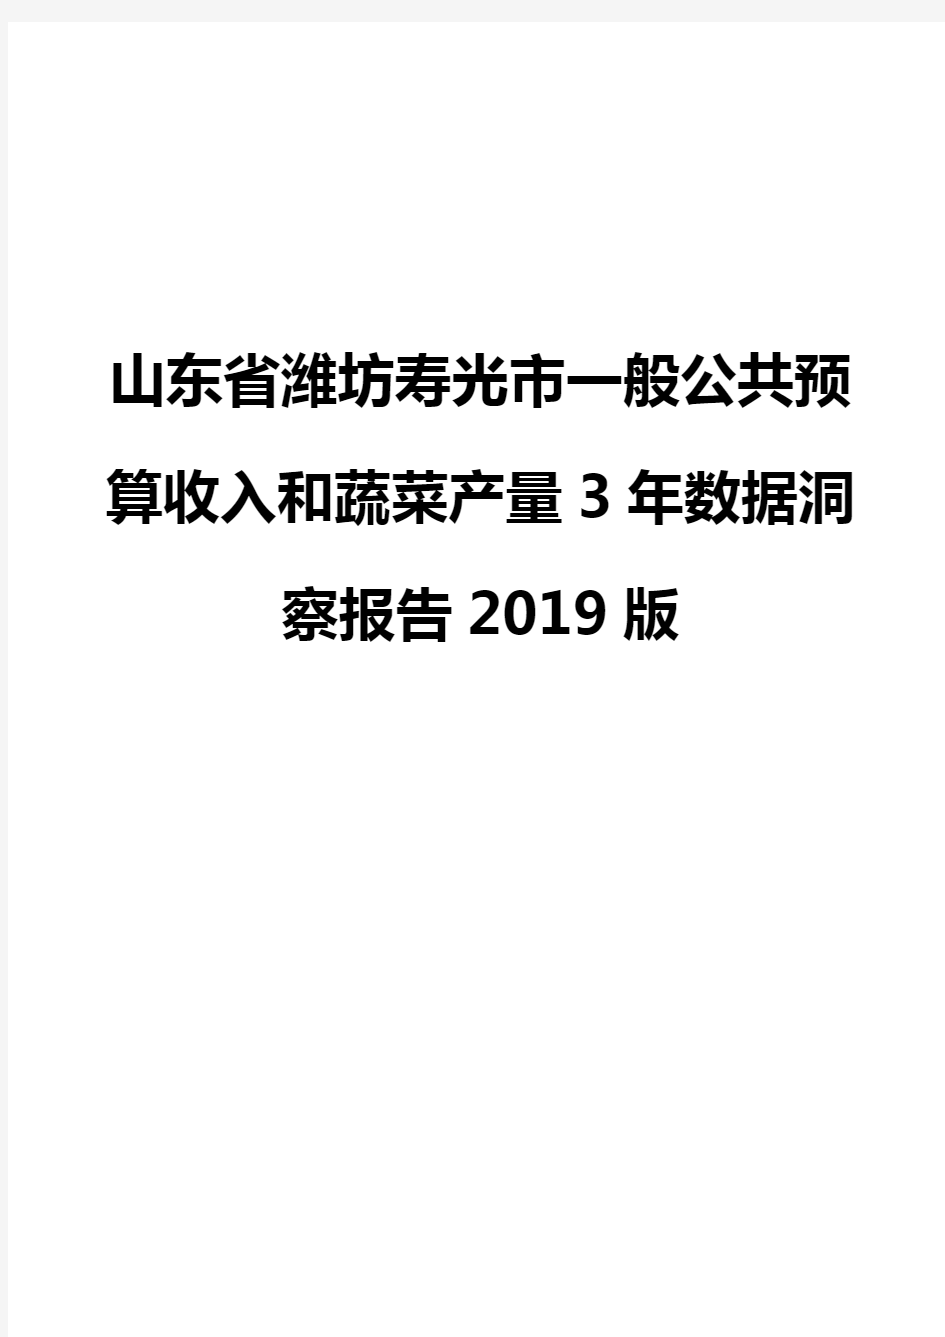 山东省潍坊寿光市一般公共预算收入和蔬菜产量3年数据洞察报告2019版